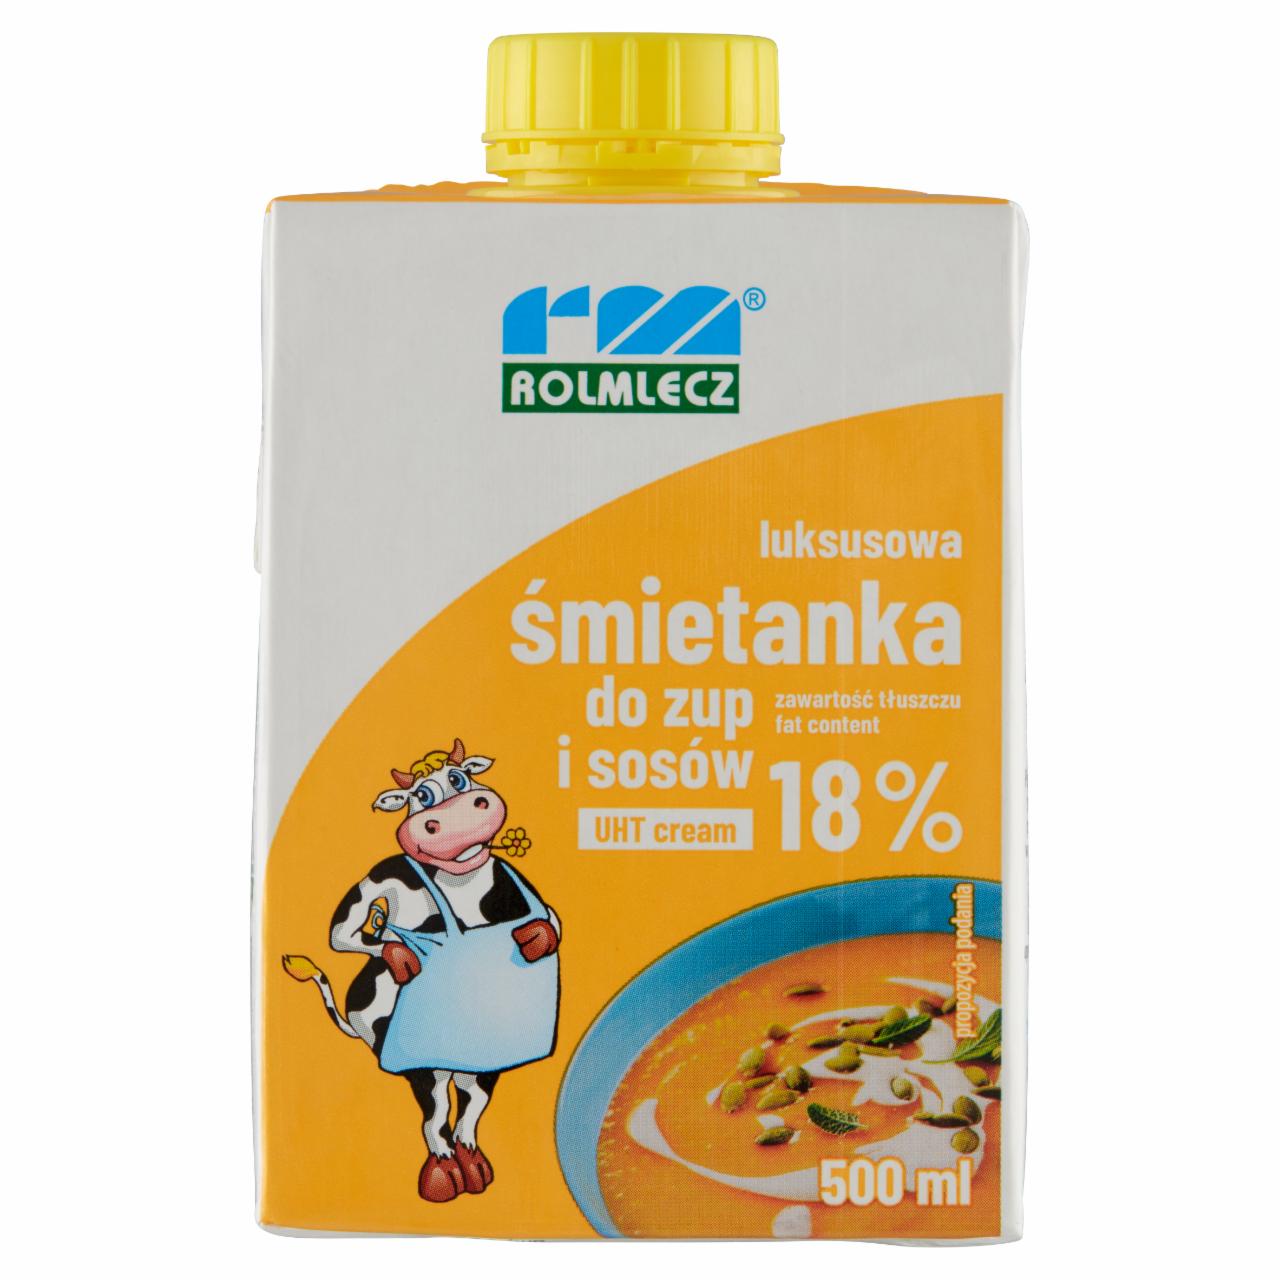 Zdjęcia - Rolmlecz Luksusowa śmietanka do zup i sosów UHT 18% 500 ml